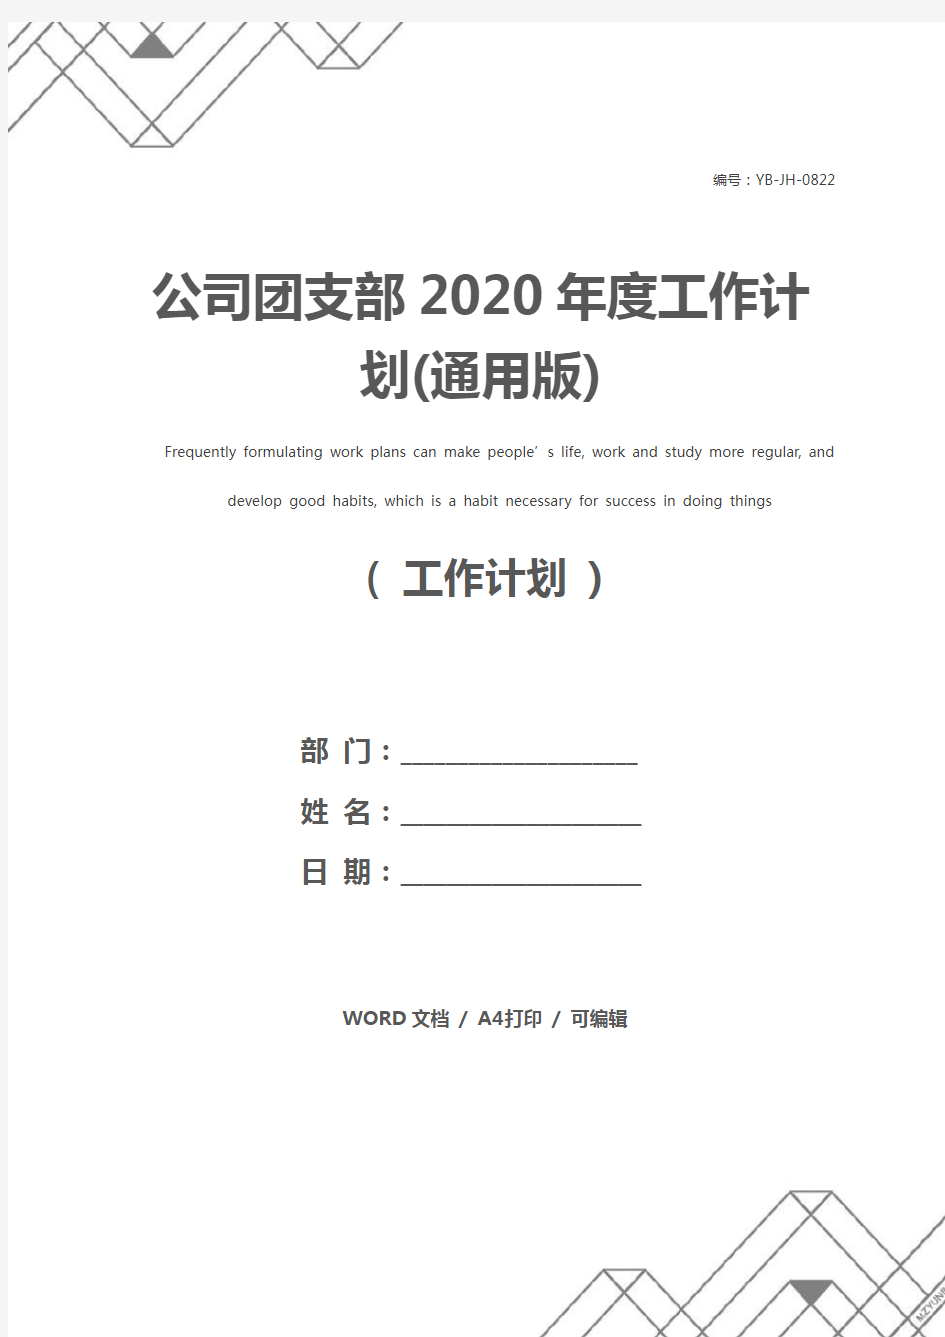 公司团支部2020年度工作计划(通用版)